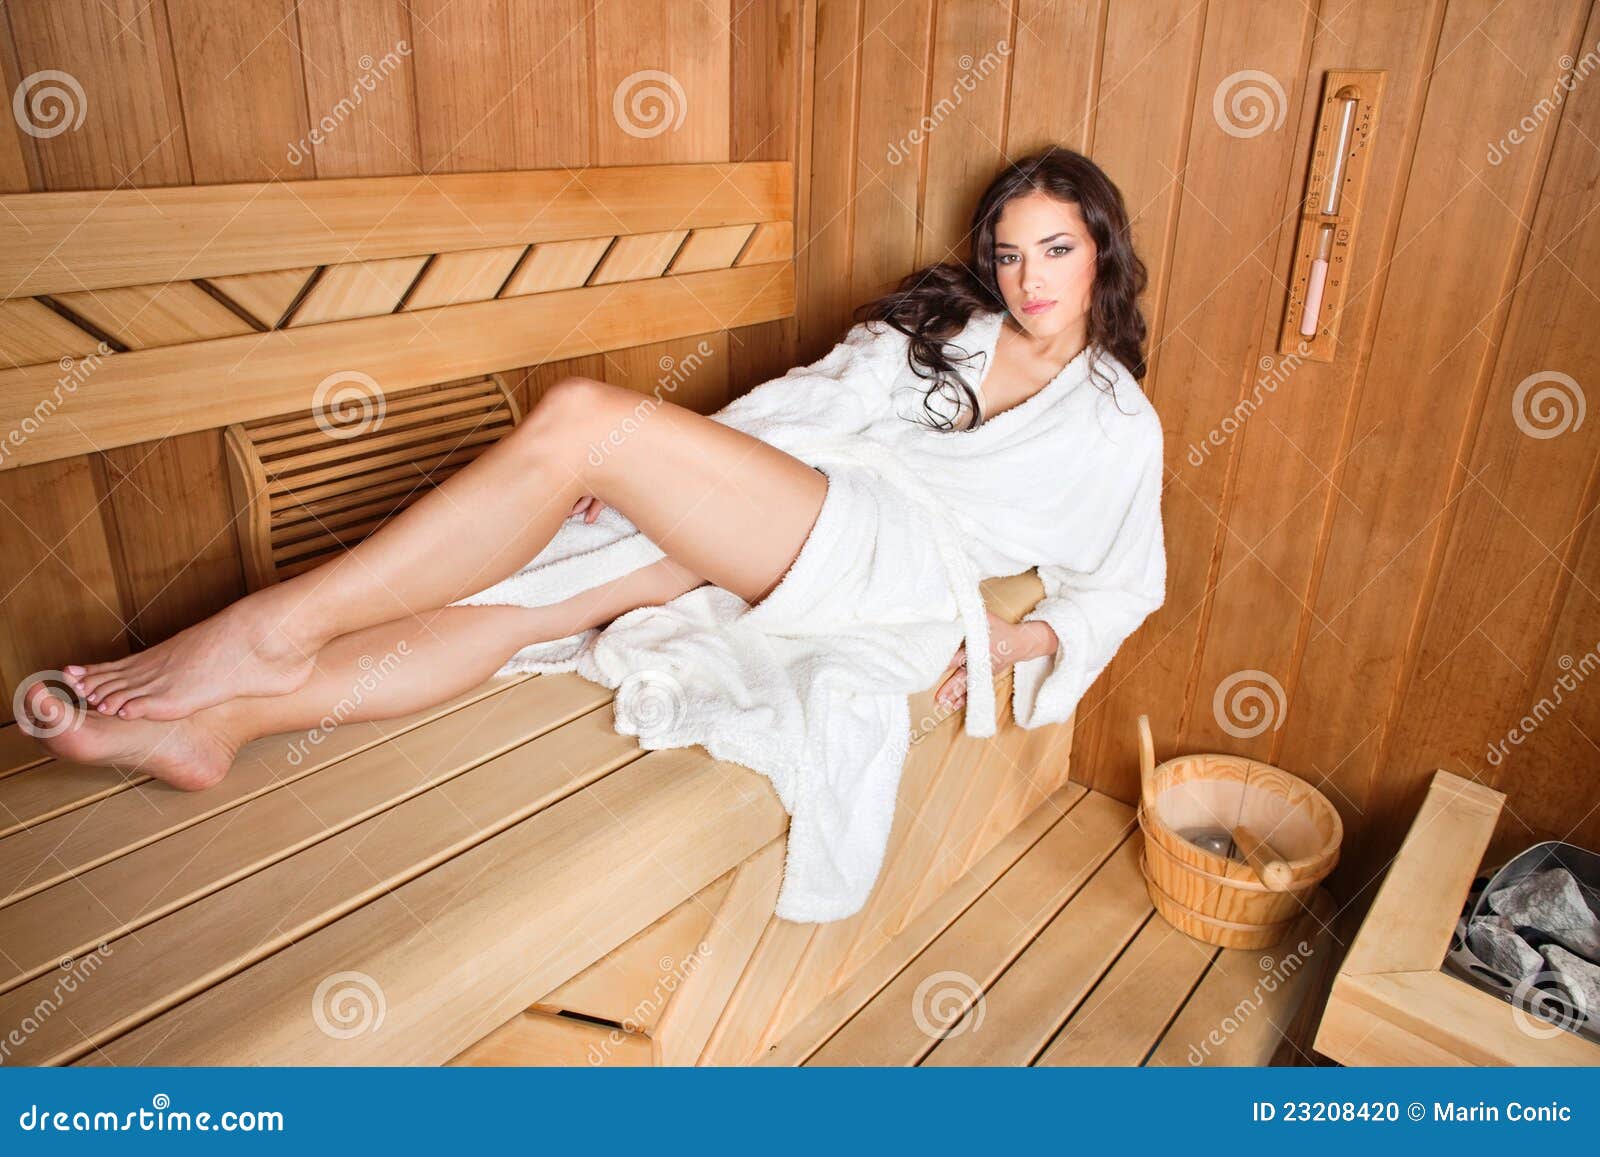 sauna women Swedish